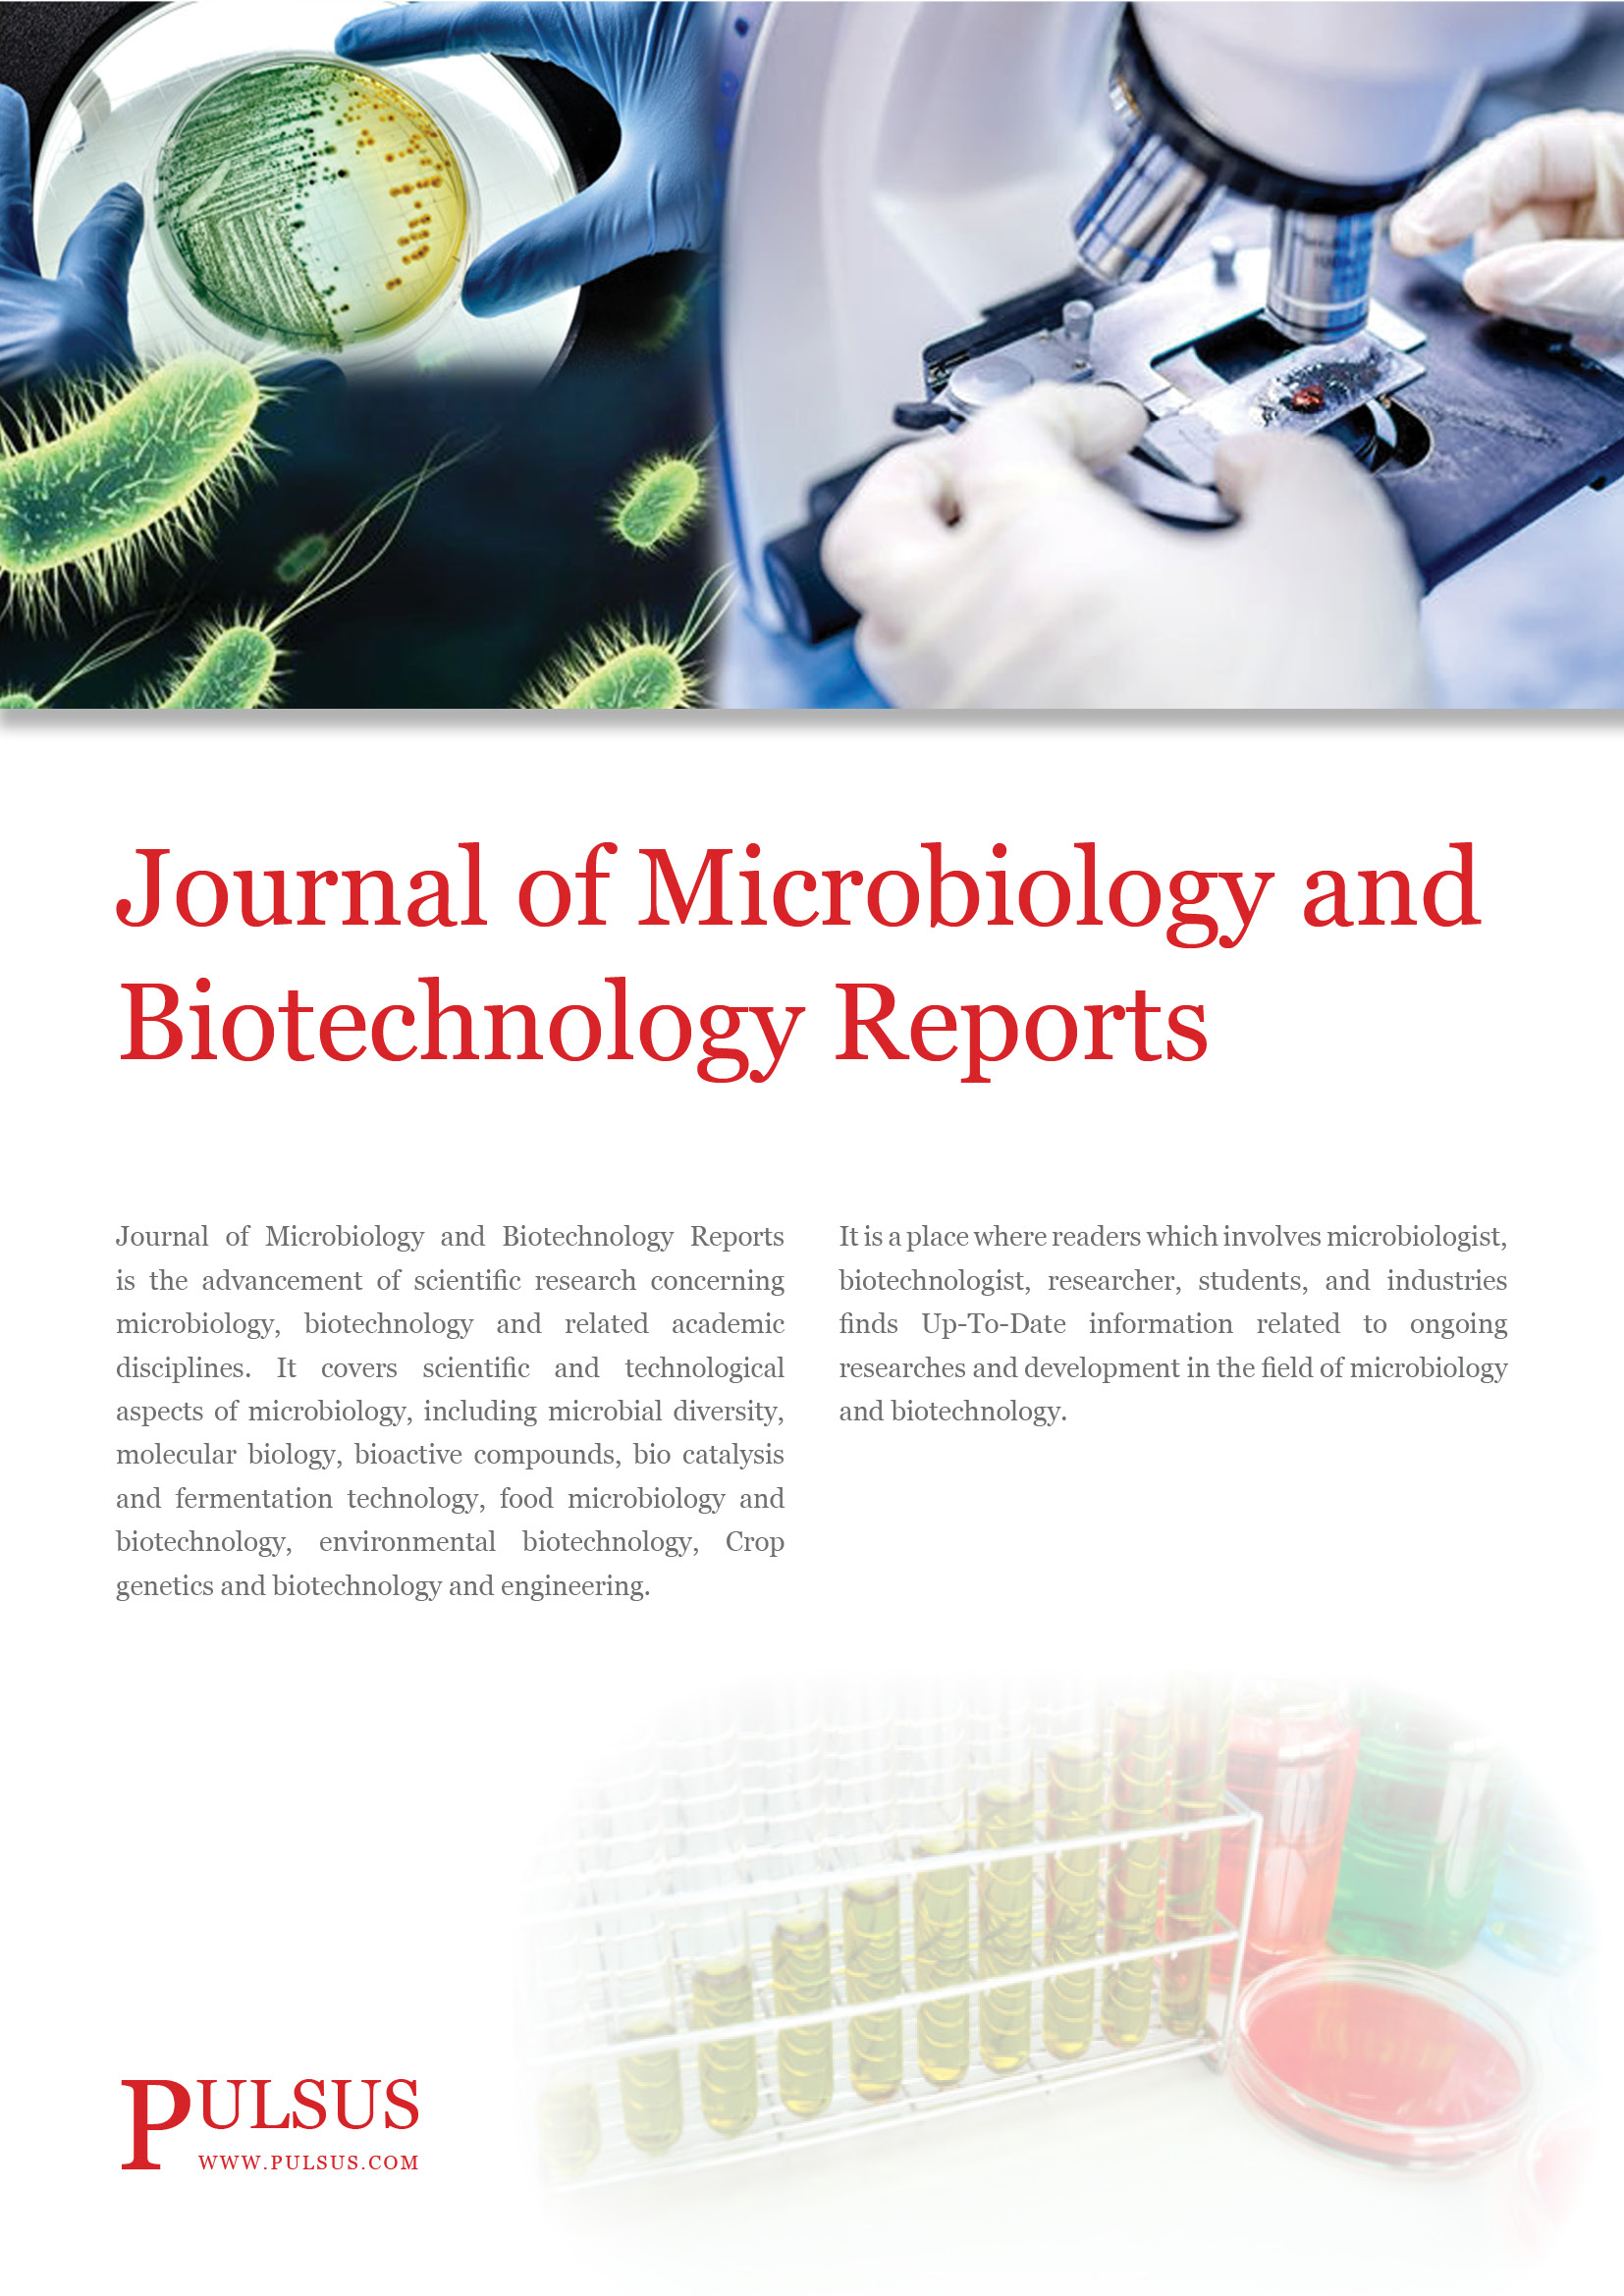 Revista de informes de microbiología y biotecnología.